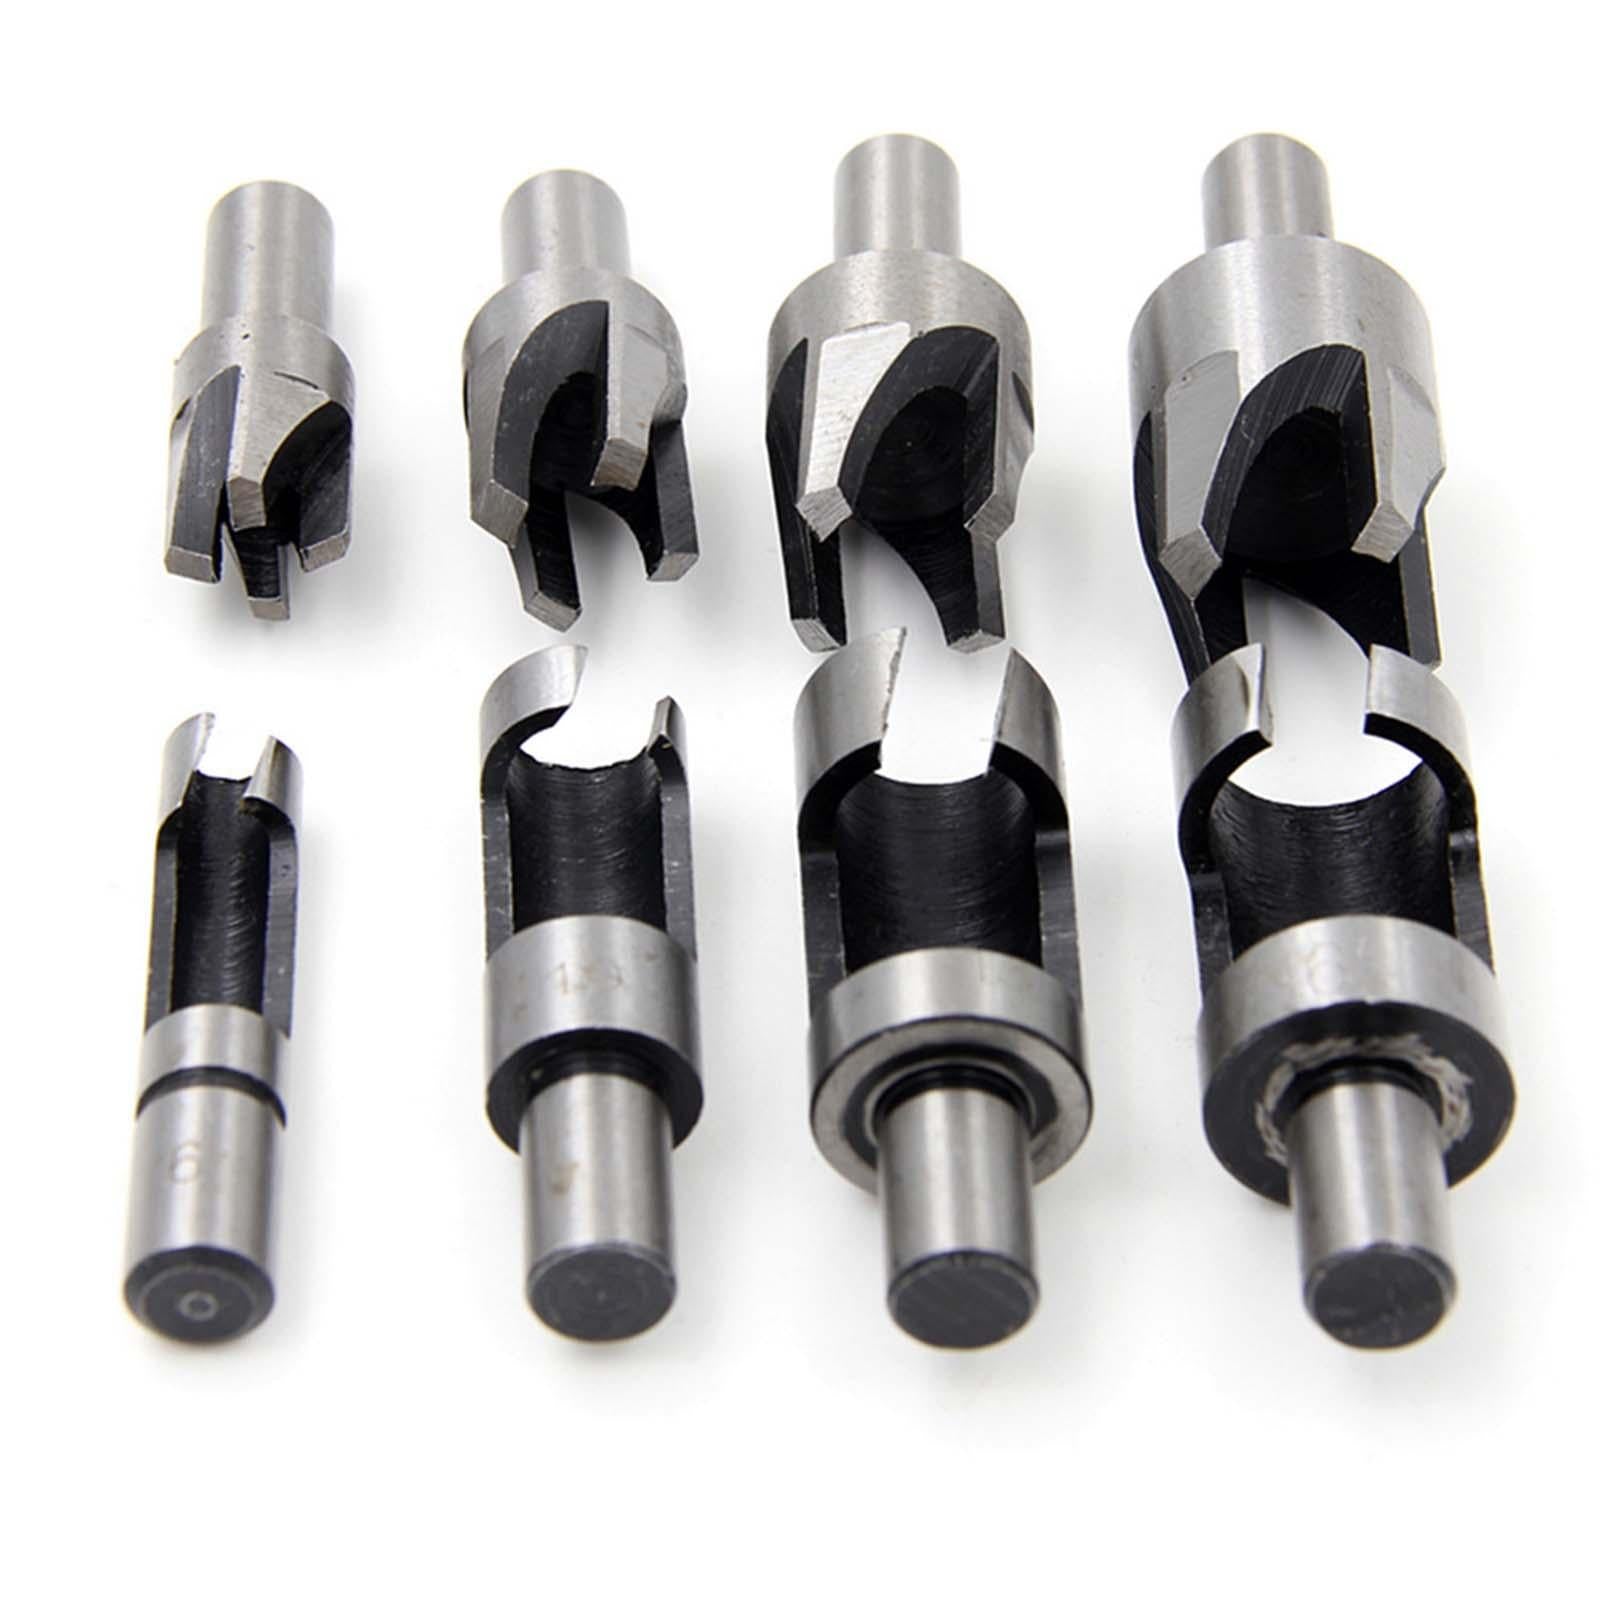 8x Wood Plug Cutter Cork Drill Bit Set Counterbored Holes Drill Bits Set